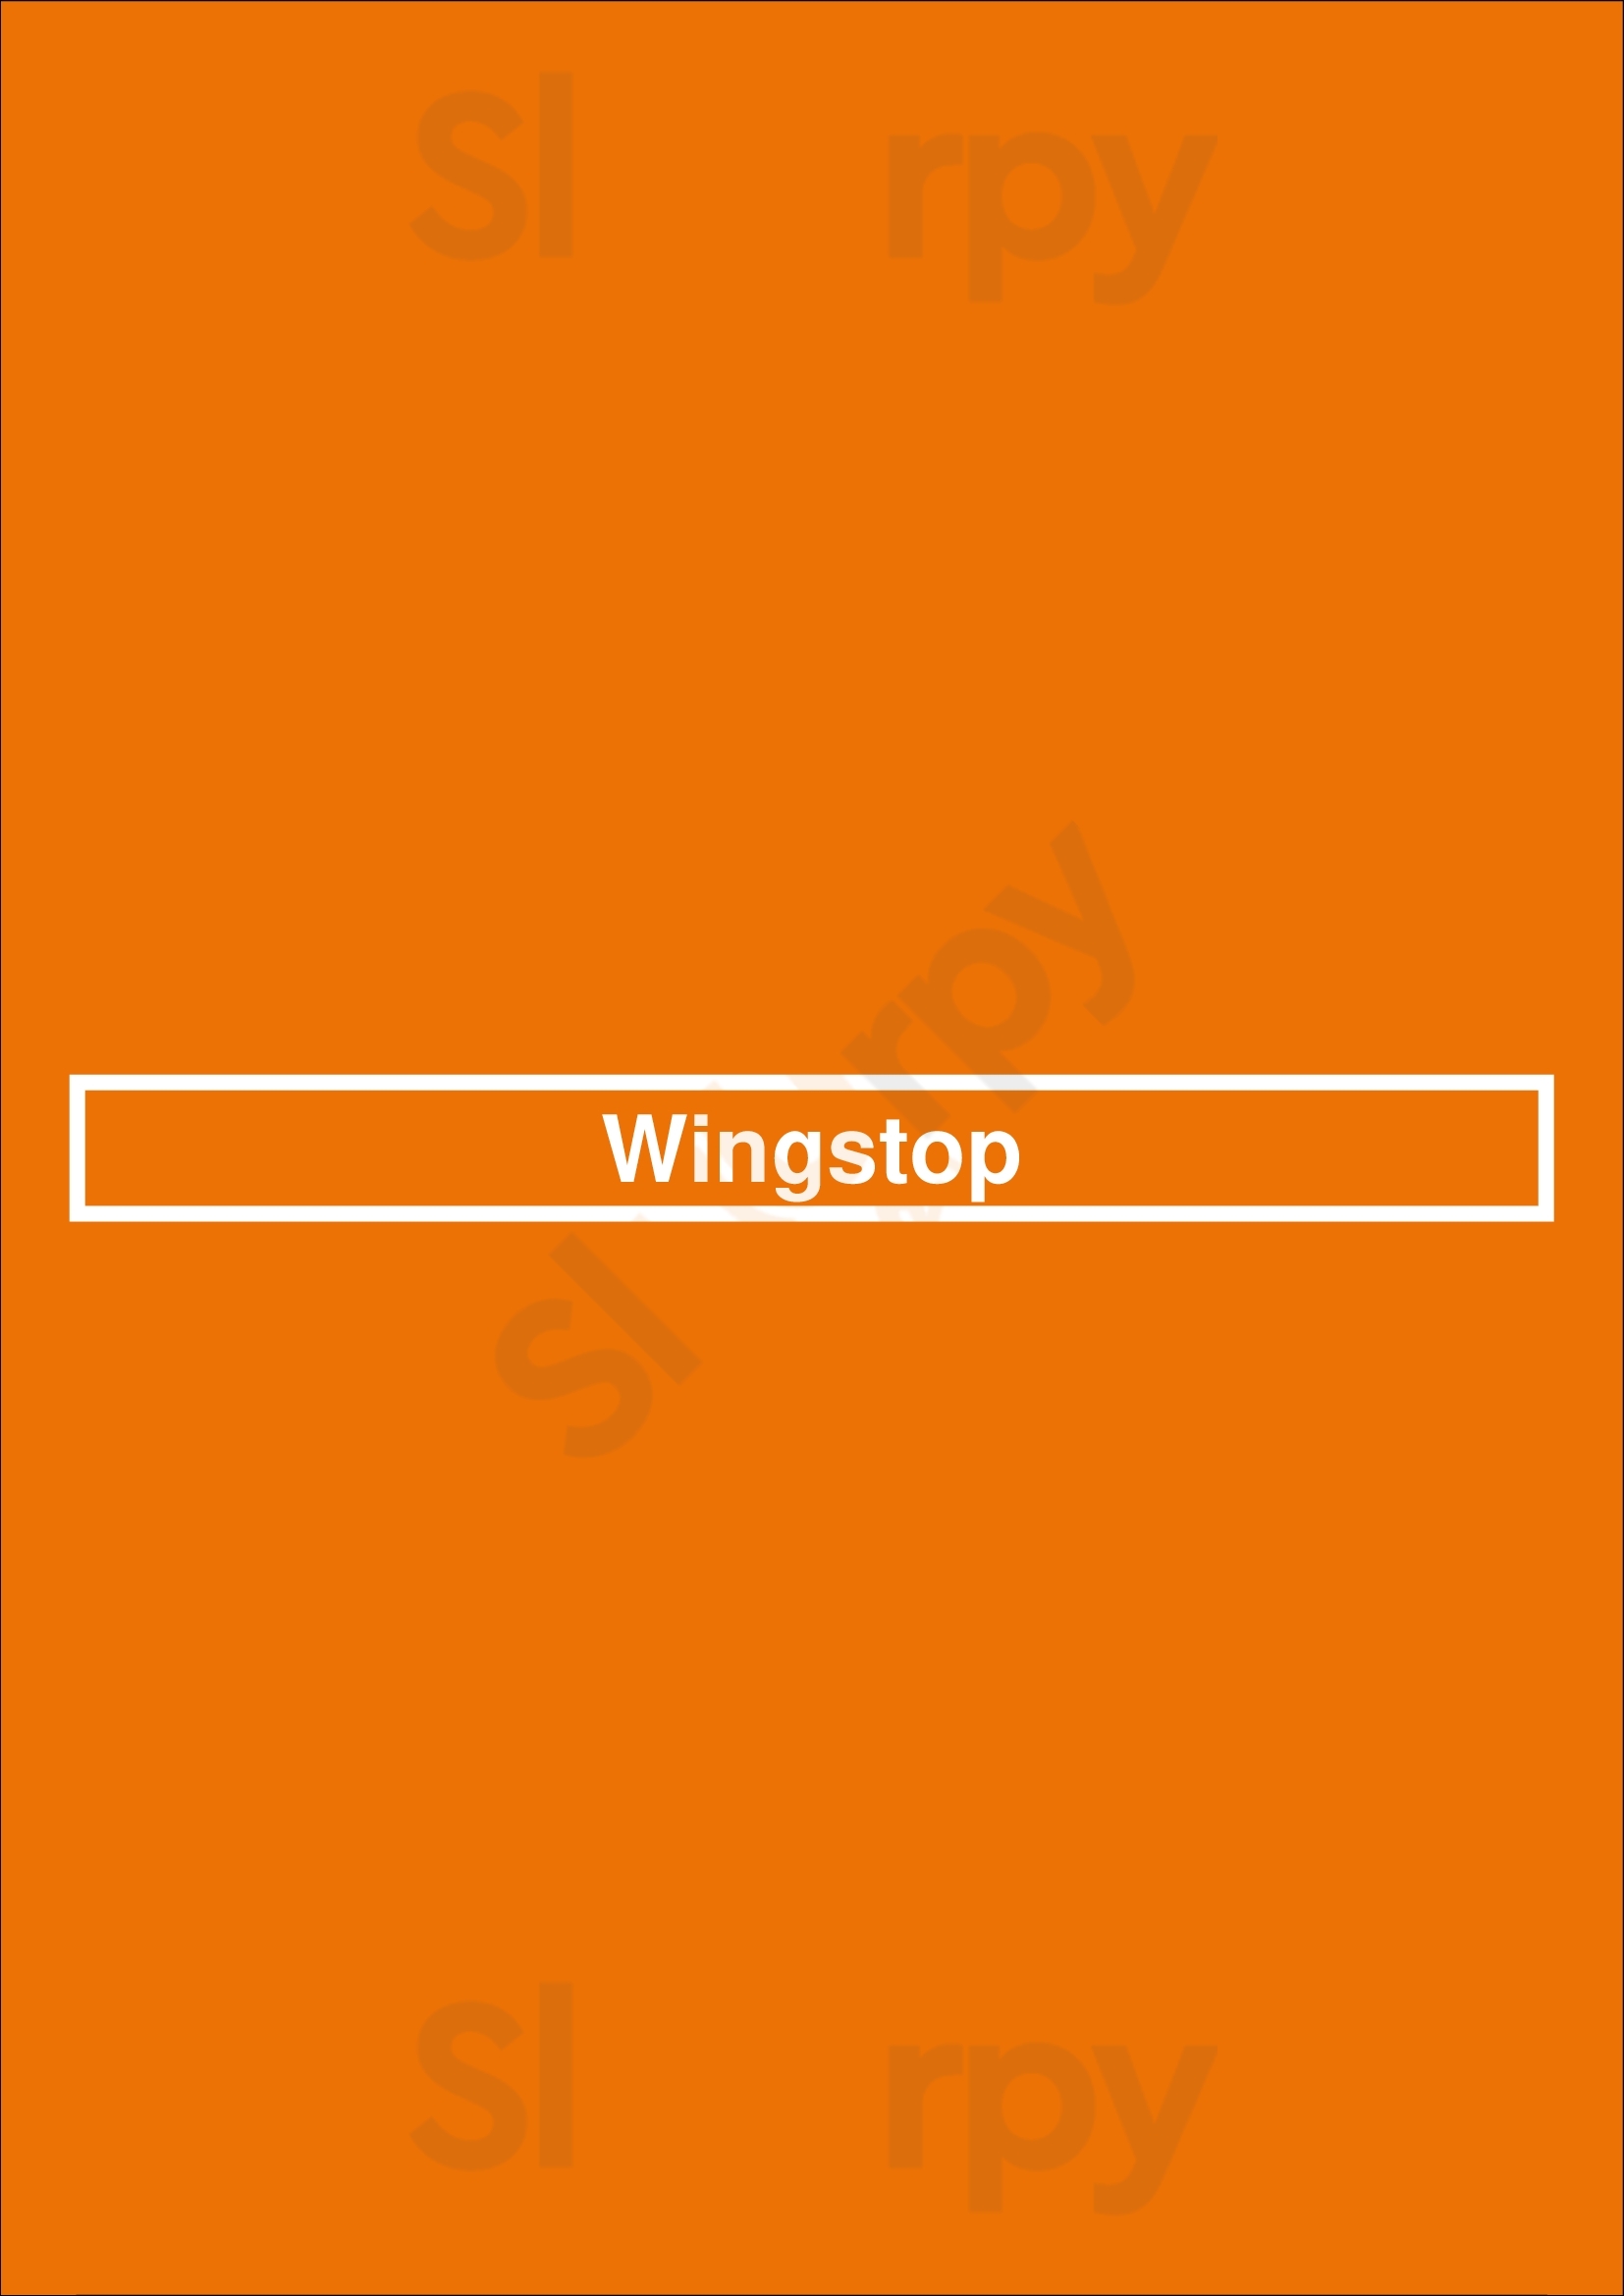 Wingstop Tucson Menu - 1